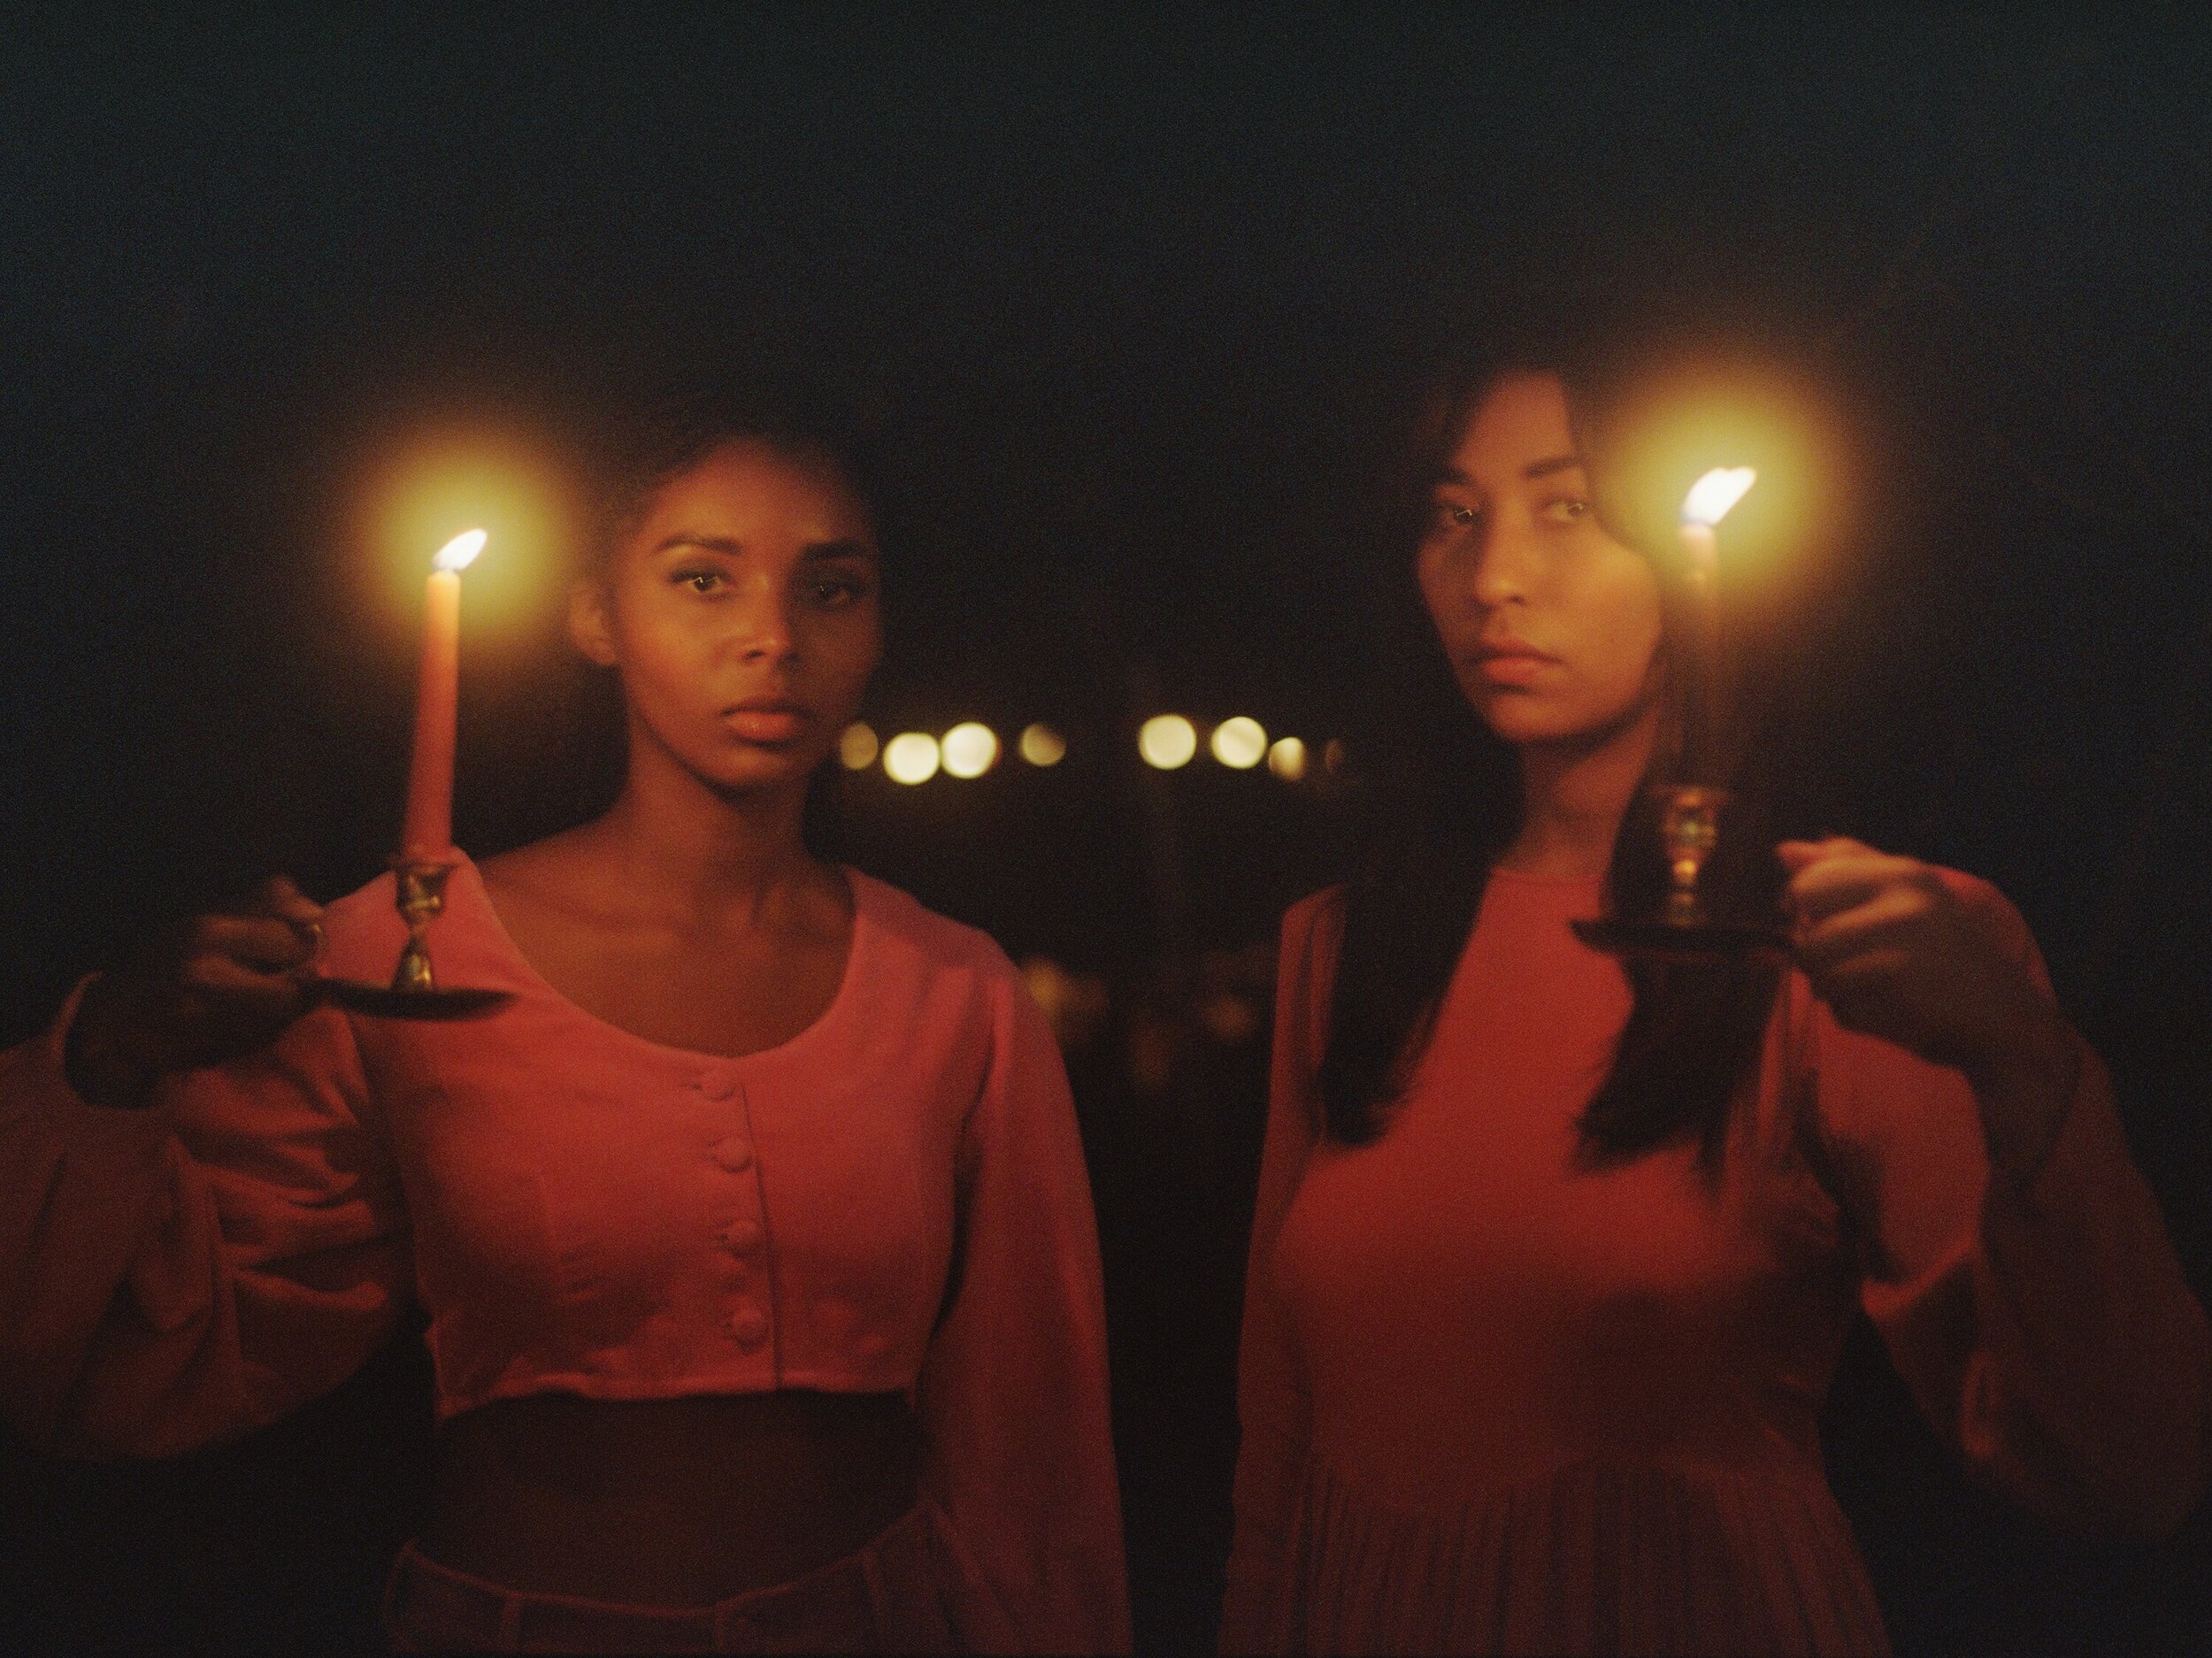 Kandia and Cheyanne by candlelight-edit 2.JPEG